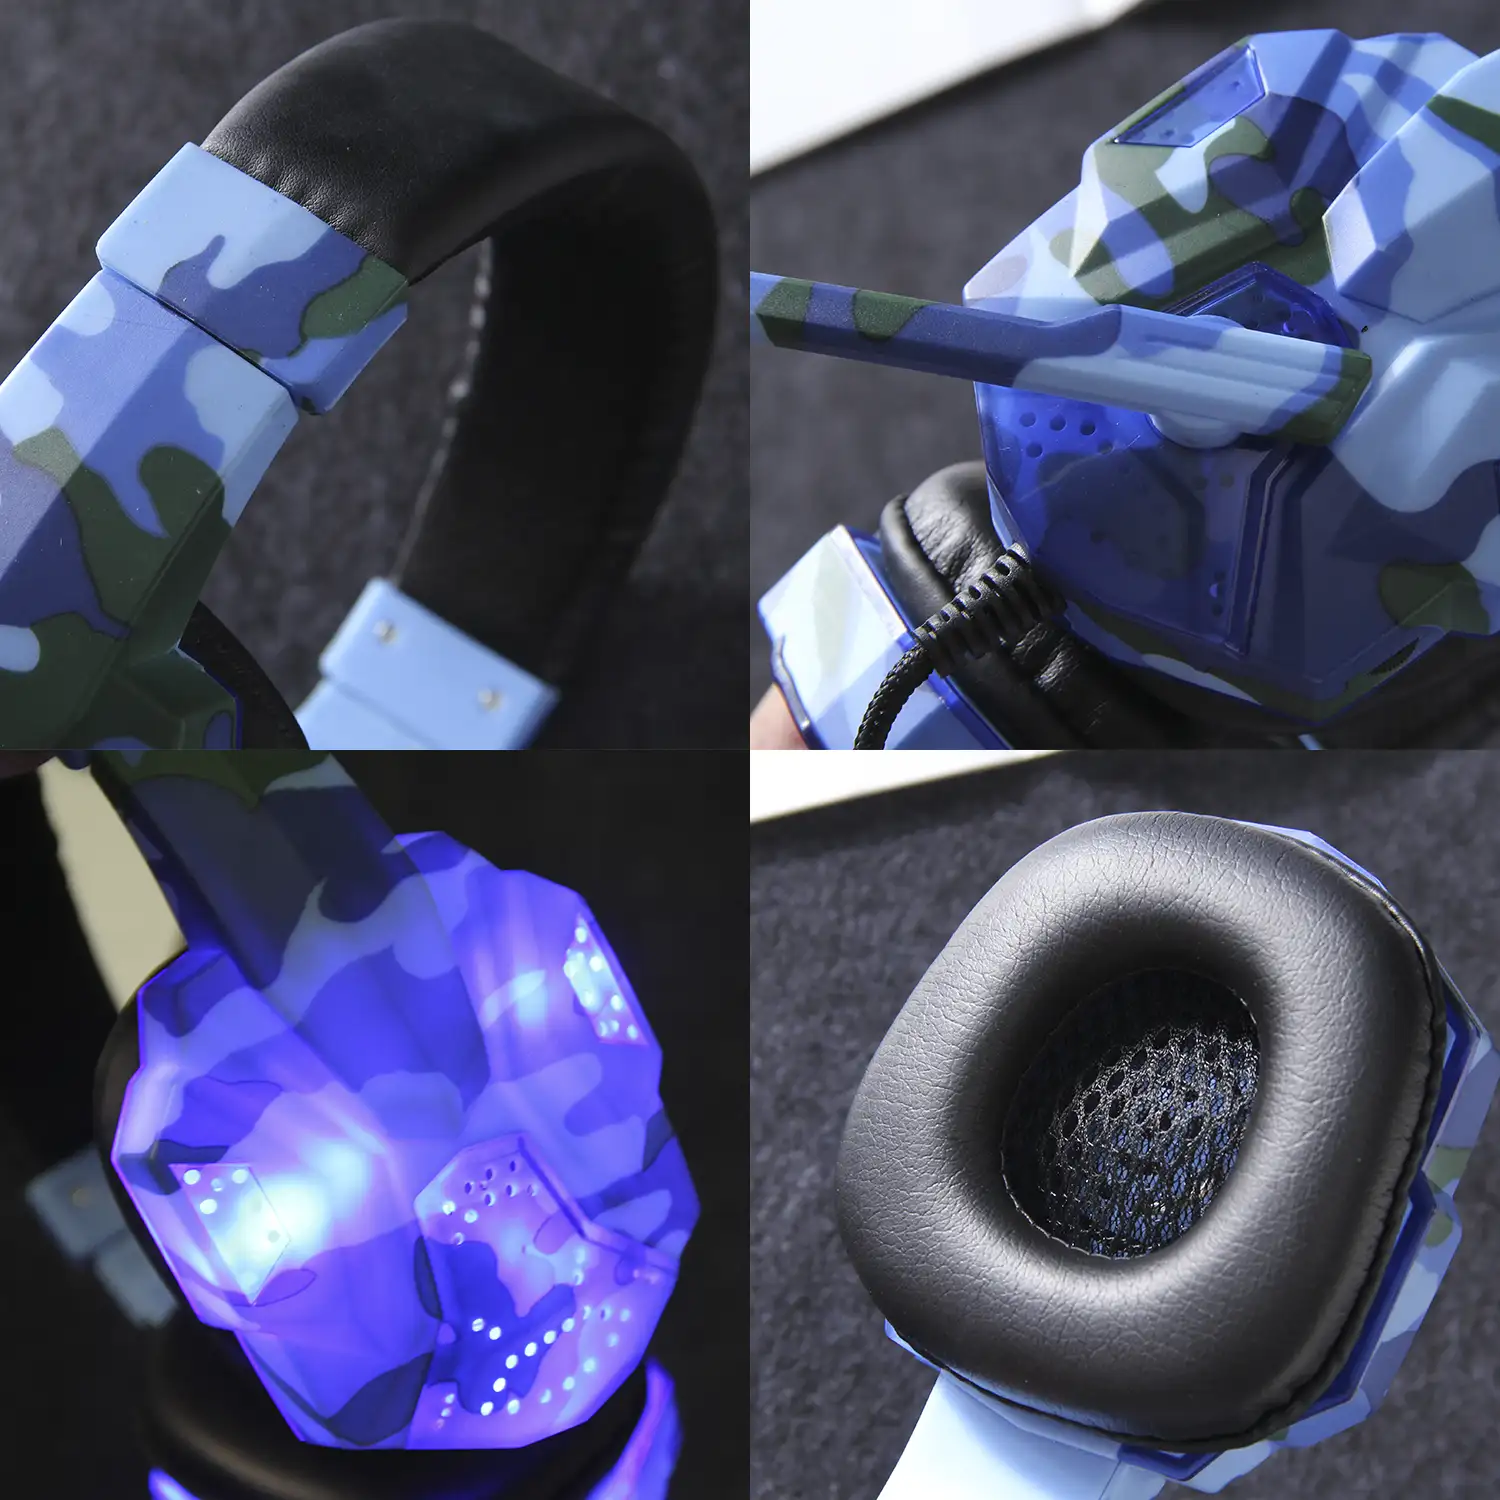 Headset SY830MV con luces led. Auriculares gaming con micro, conexión  minijack para PC, portátil, PS4, Xbox